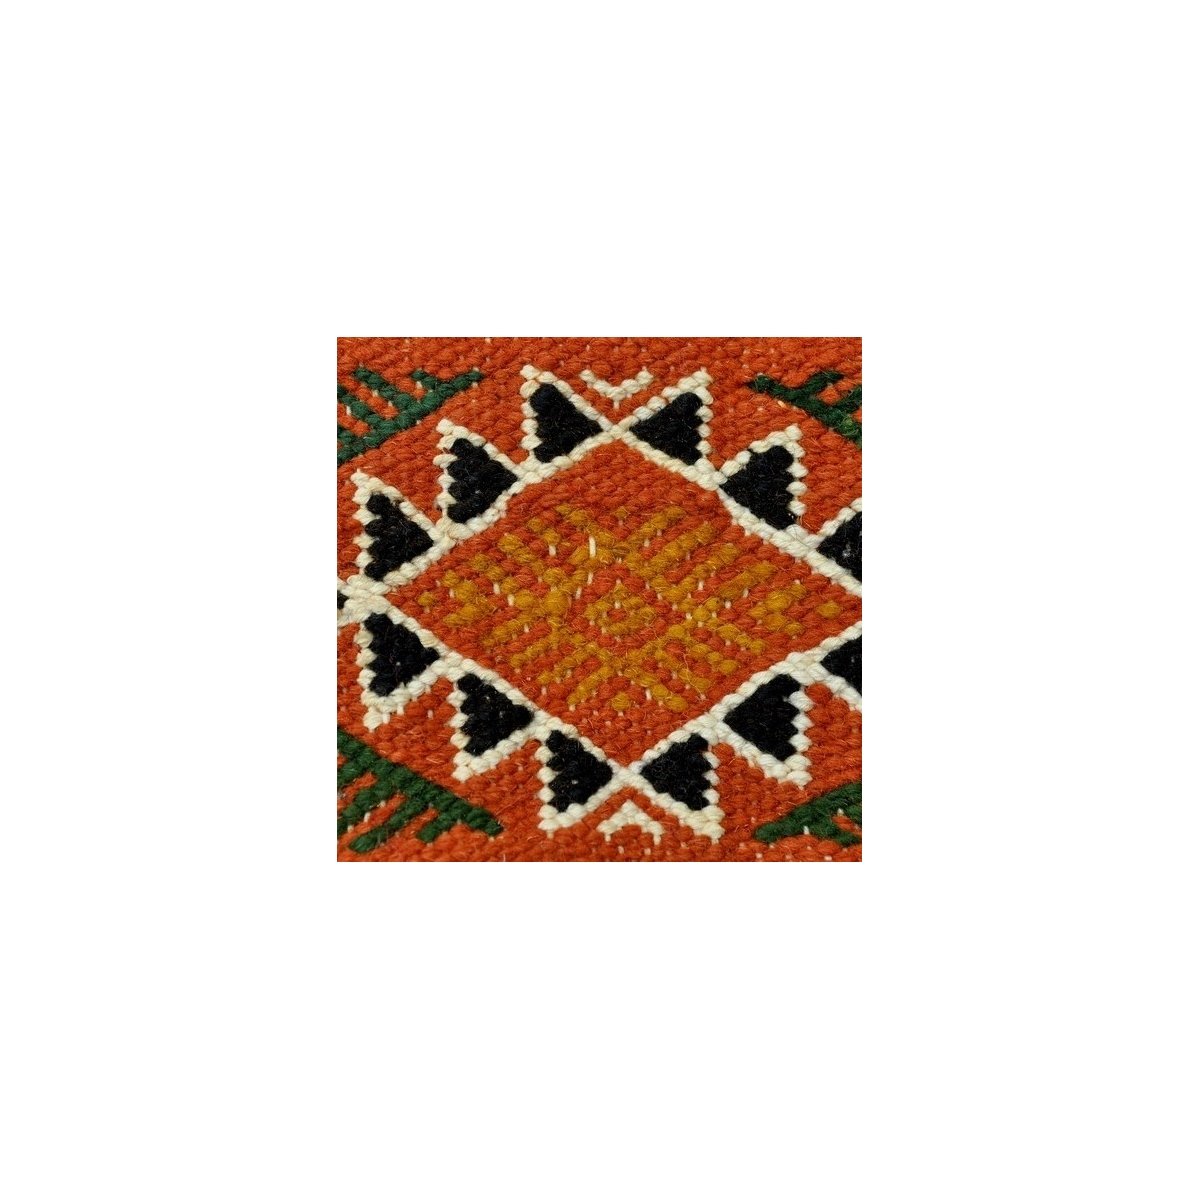 tappeto berbero Tappeto Kilim Beskra 60x100 Multicolore (Fatto a mano, Lana, Tunisia) Tappeto kilim tunisino, in stile marocchin